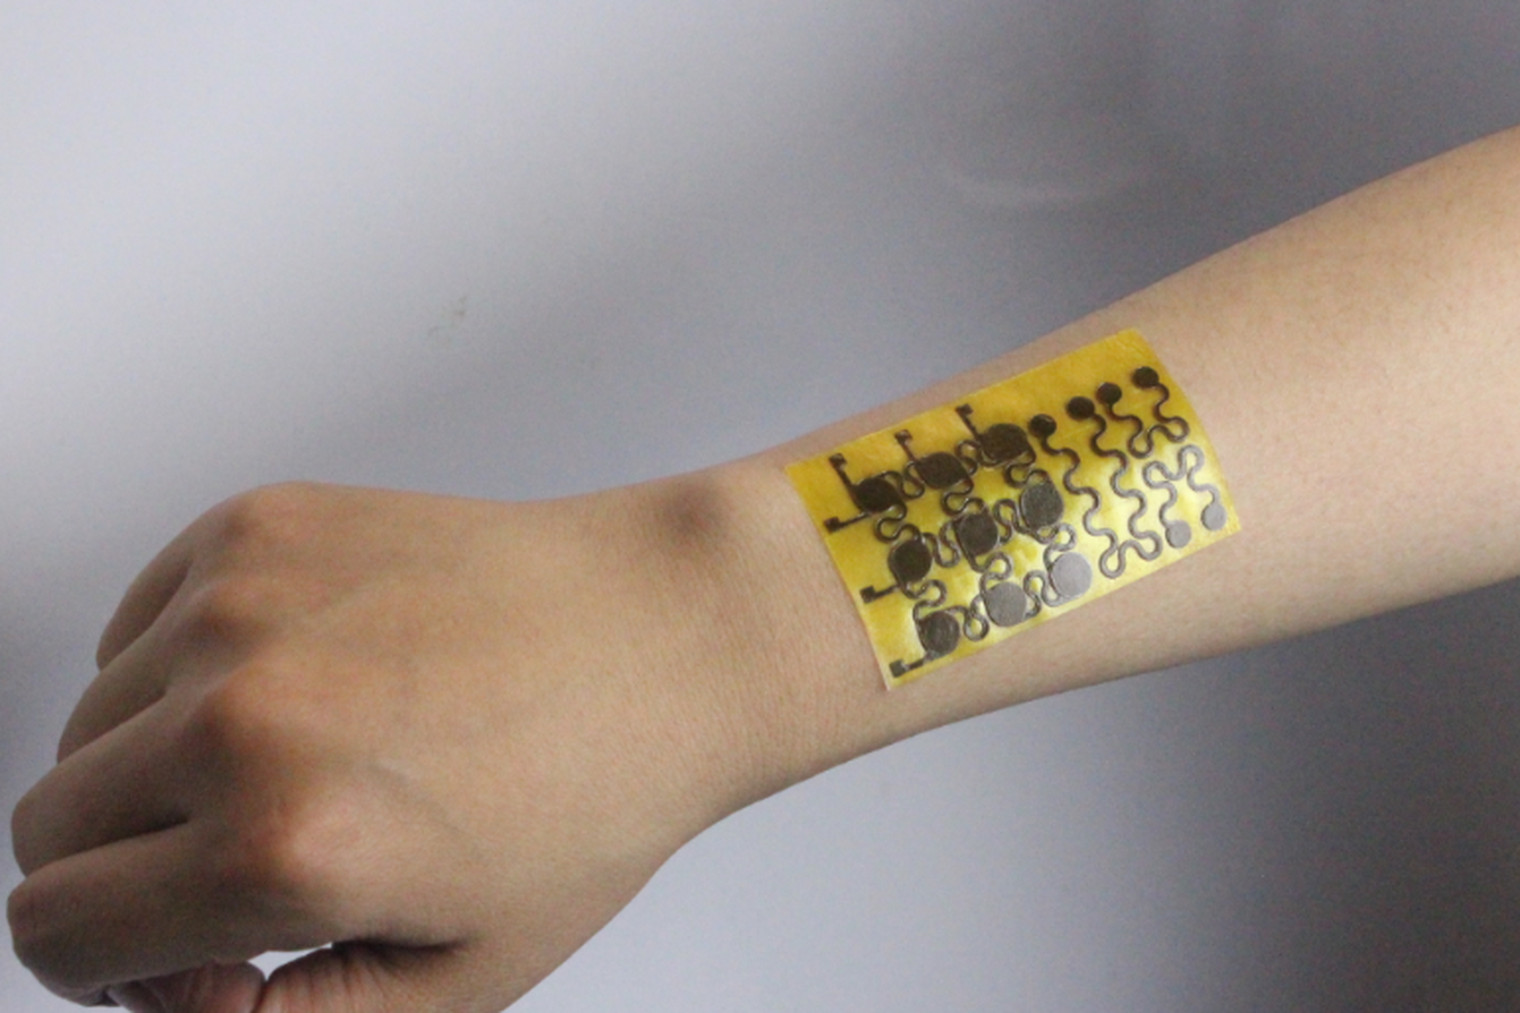 این پوست الکترونیکی می تواند خود را ترمیم کرده یا به طور کامل بازیافت شود